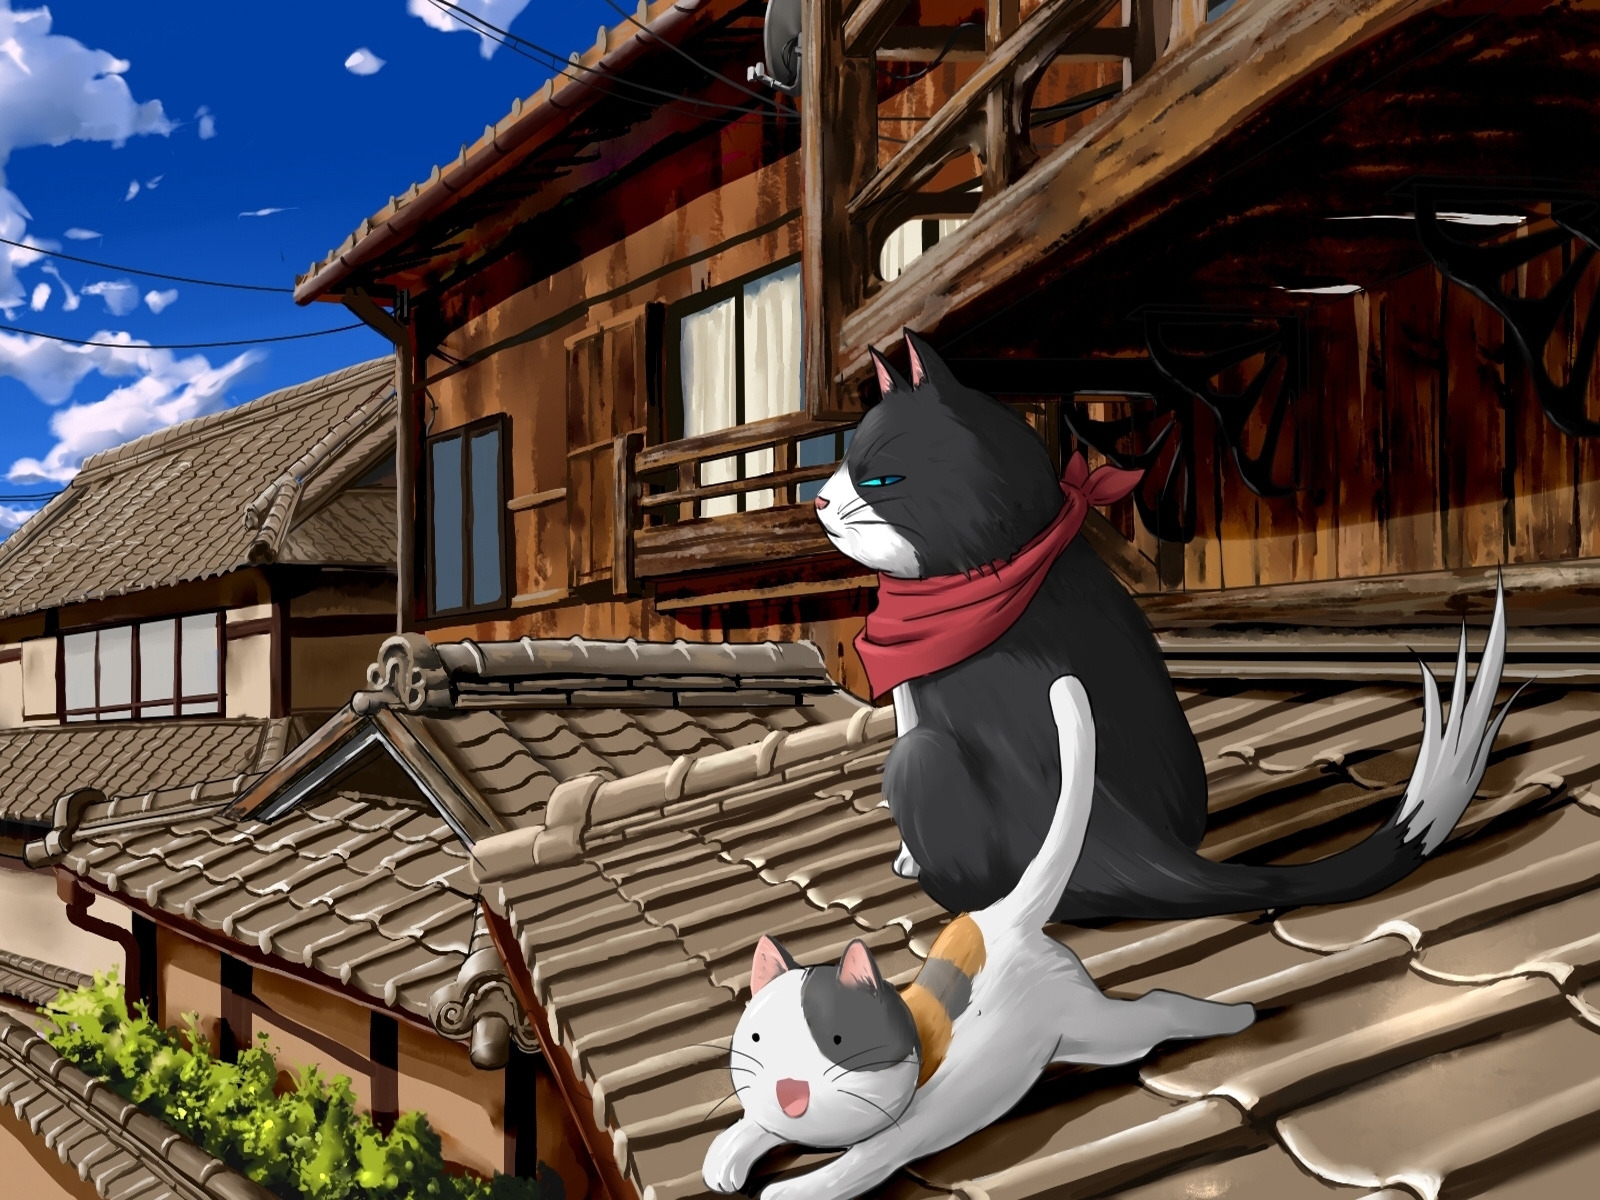 Nyan Koi Anime Series for 1600 x 1200 resolution